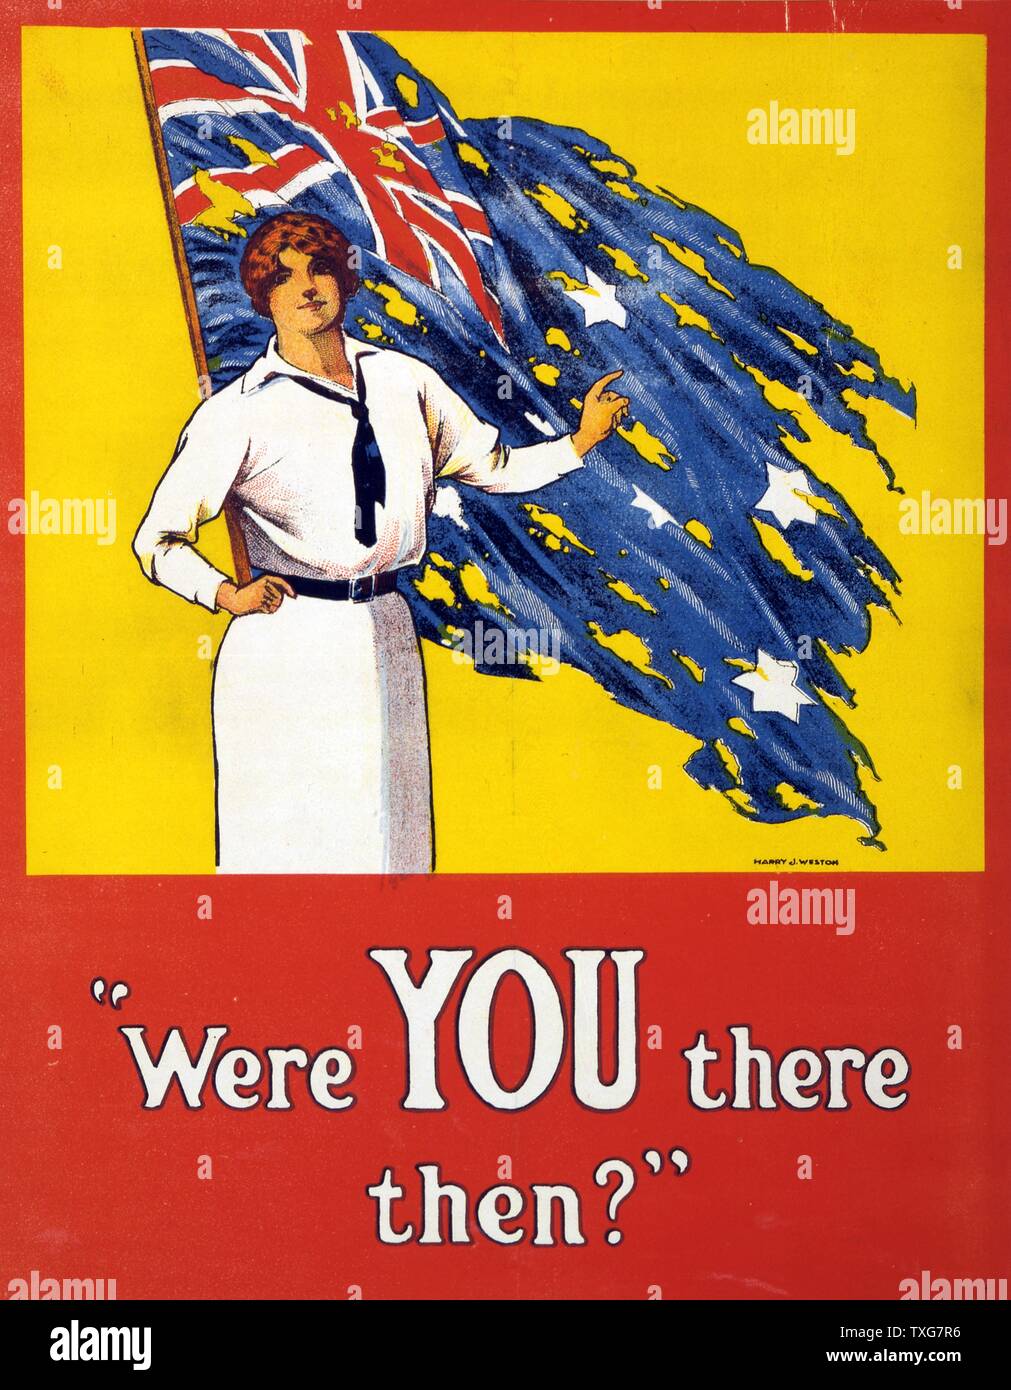 La prima guerra mondiale : " Vi erano là allora?' Poster, 1916. La donna si trova di fronte strappati bandiera australiana chiedendo la questione. Battaglia di Fromelles, fronte occidentale, Francia, 19-20 luglio 1915, Australia subito 5,533 vittime. Foto Stock